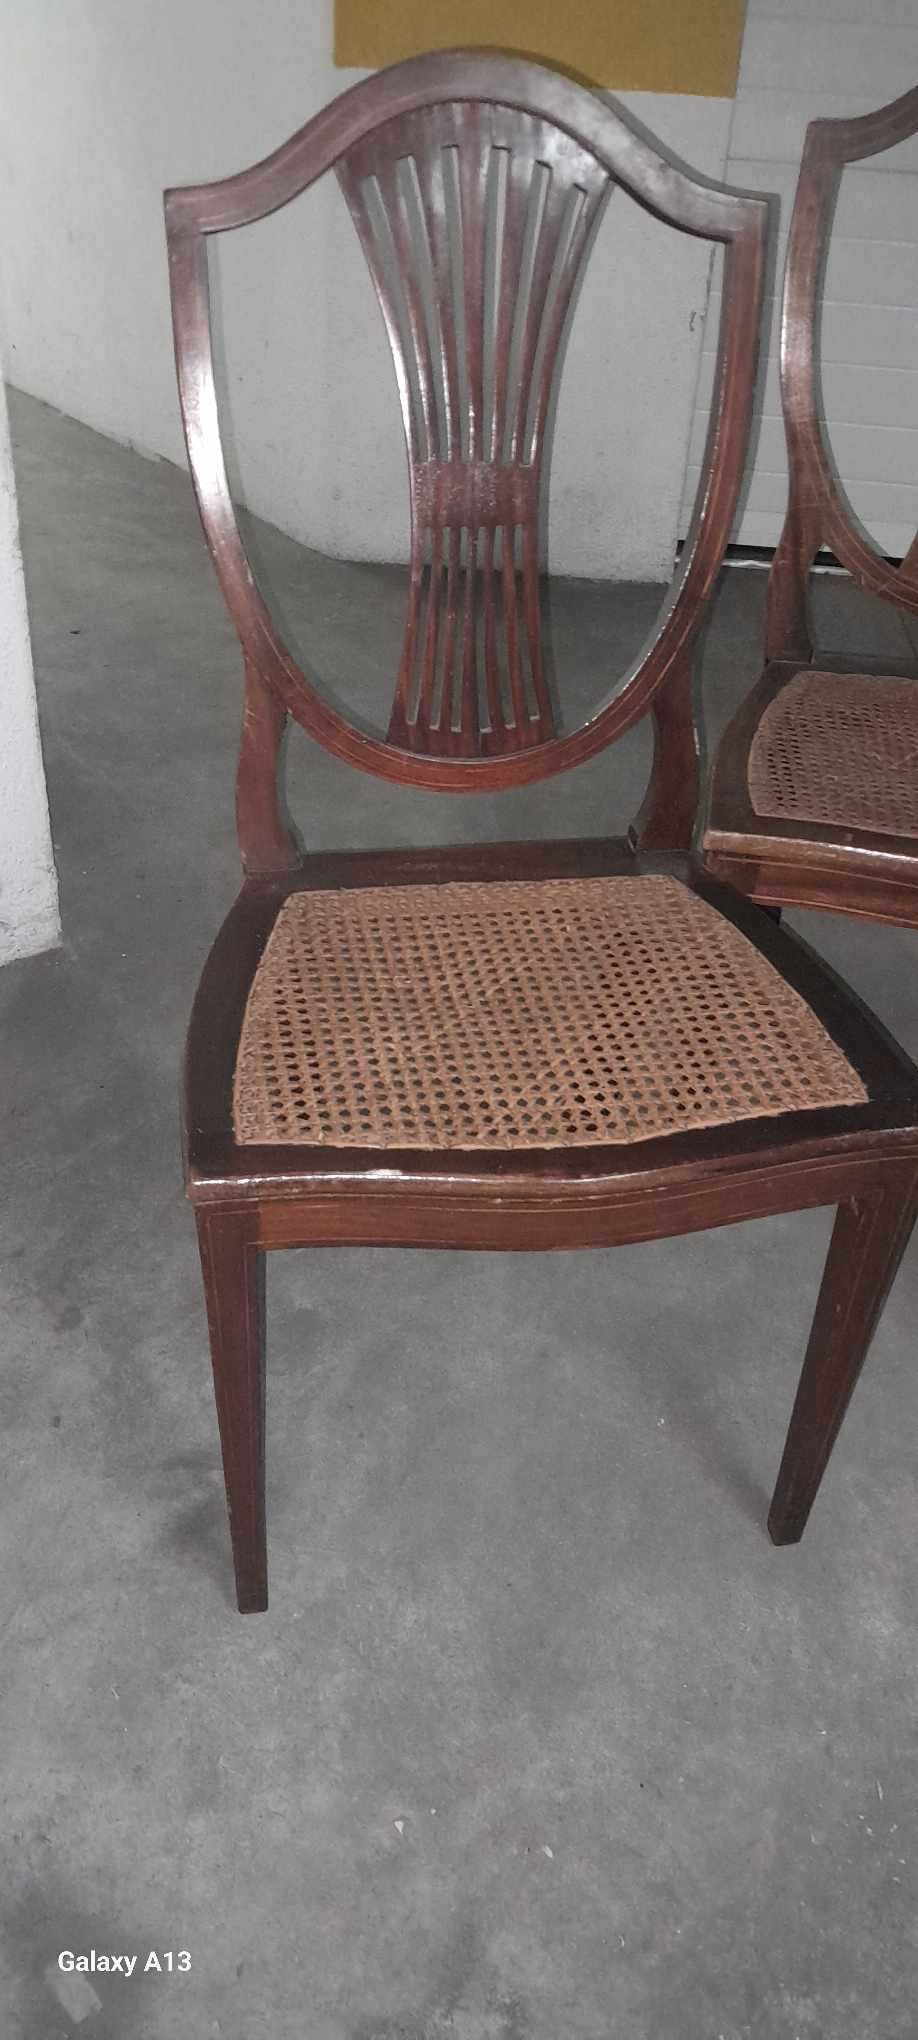 4 Cadeiras de estilo inglês